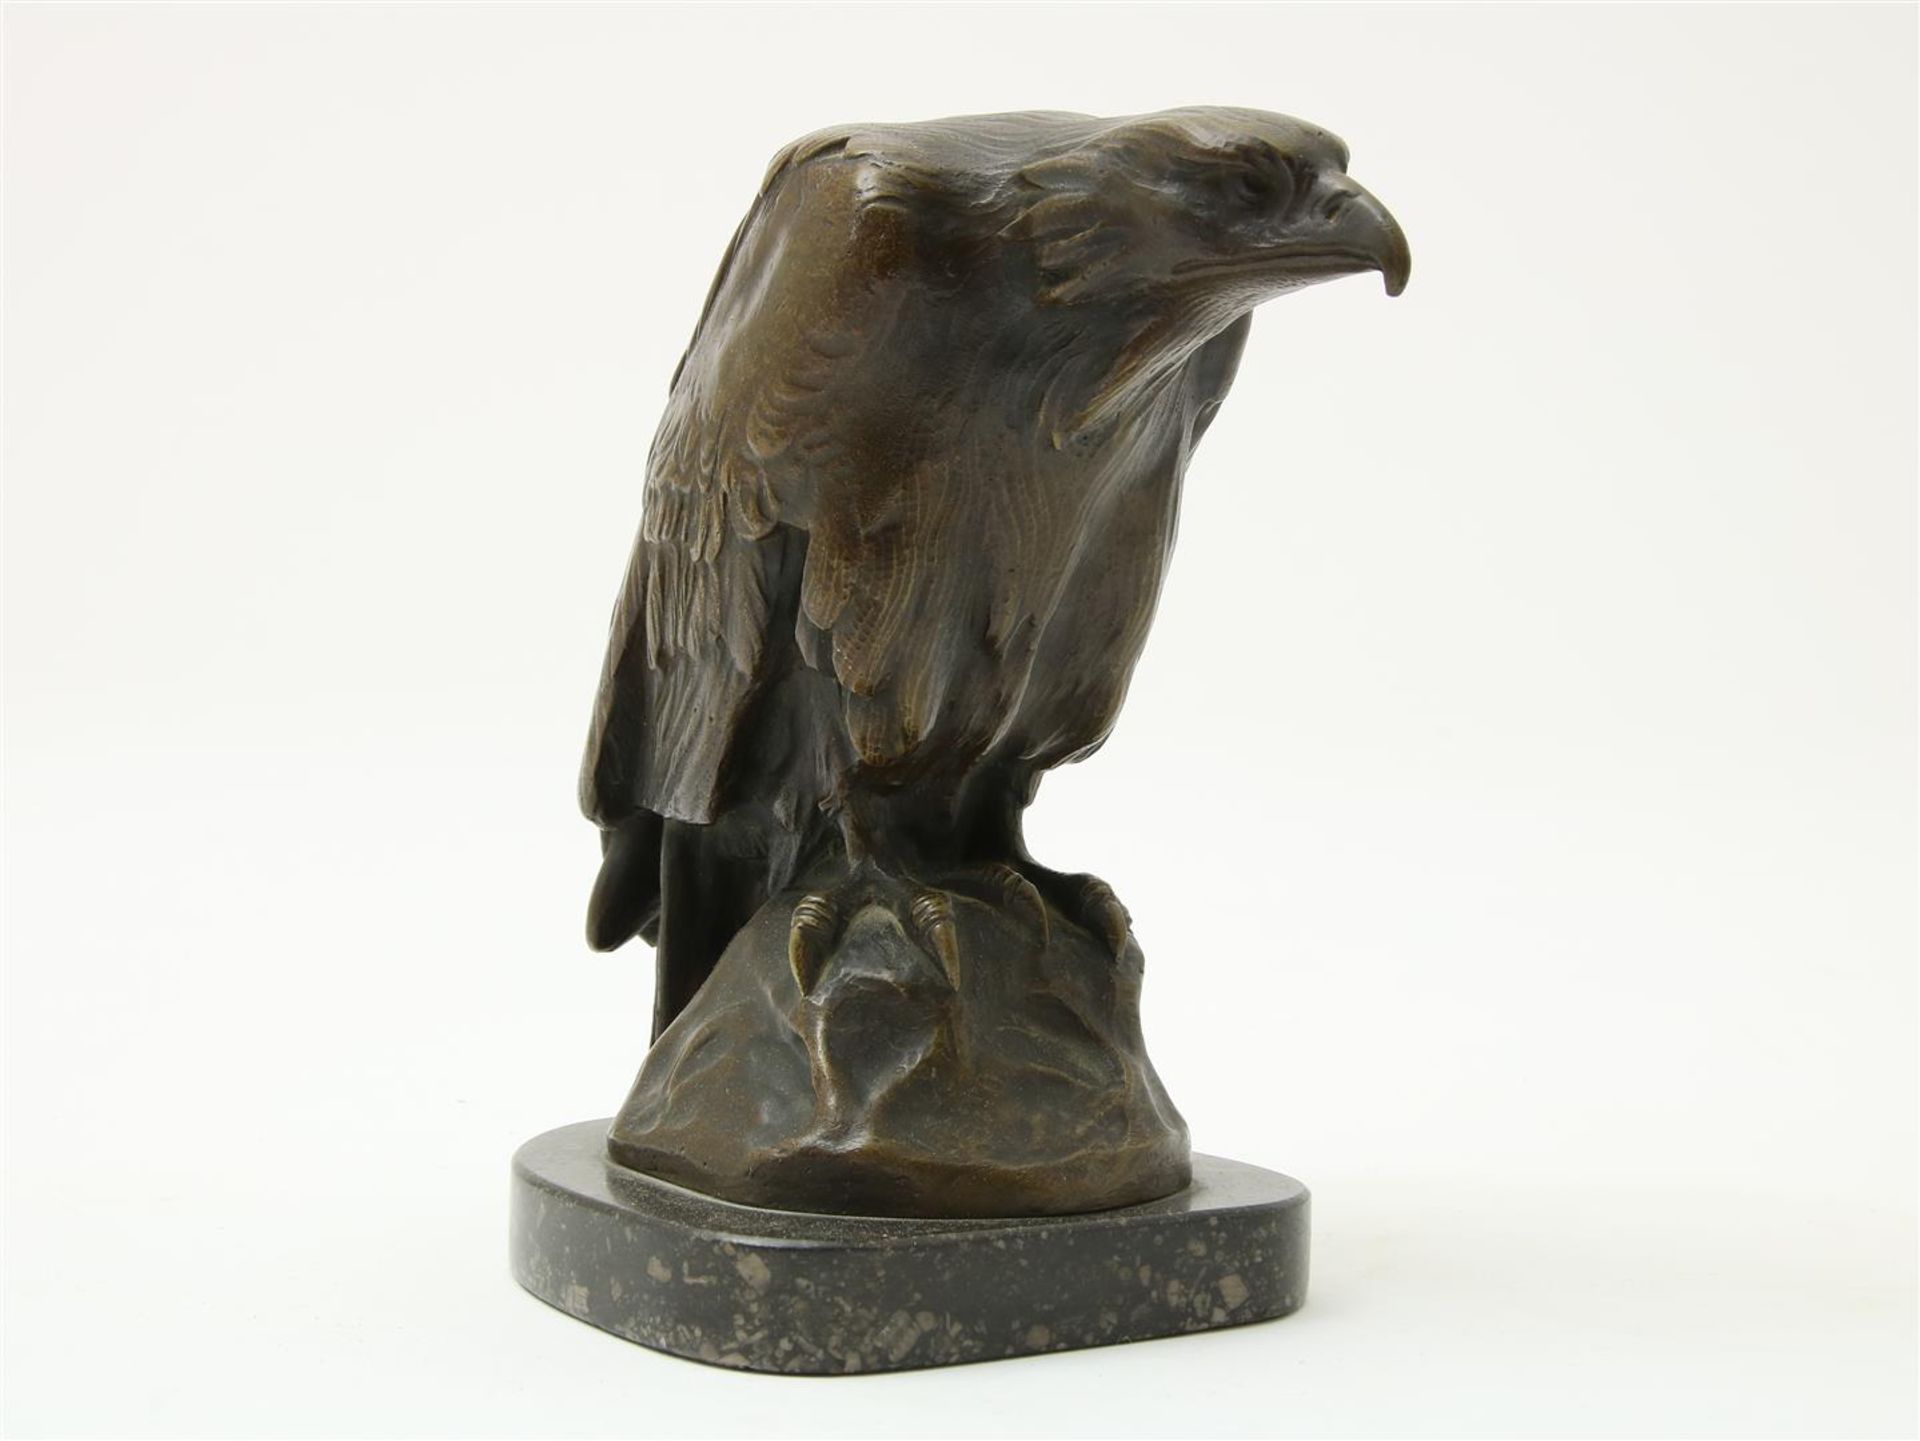 Condor on rock, signed Kohl (=Gustav Kohl), bronze sculpture on marble base, height 18 cm.